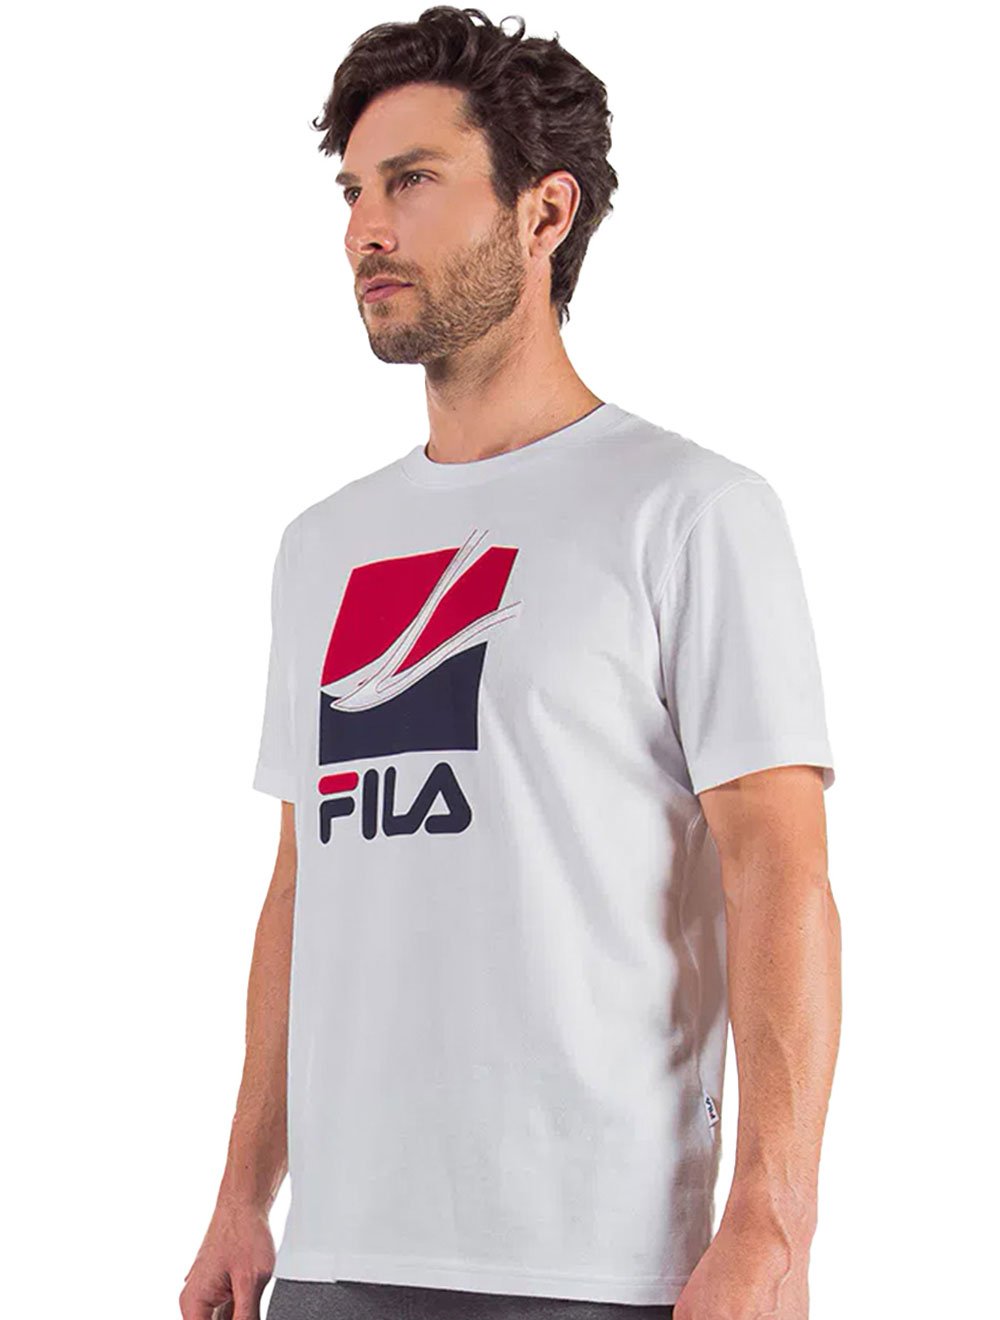 Camiseta Fila Masculina Re Essential Branca